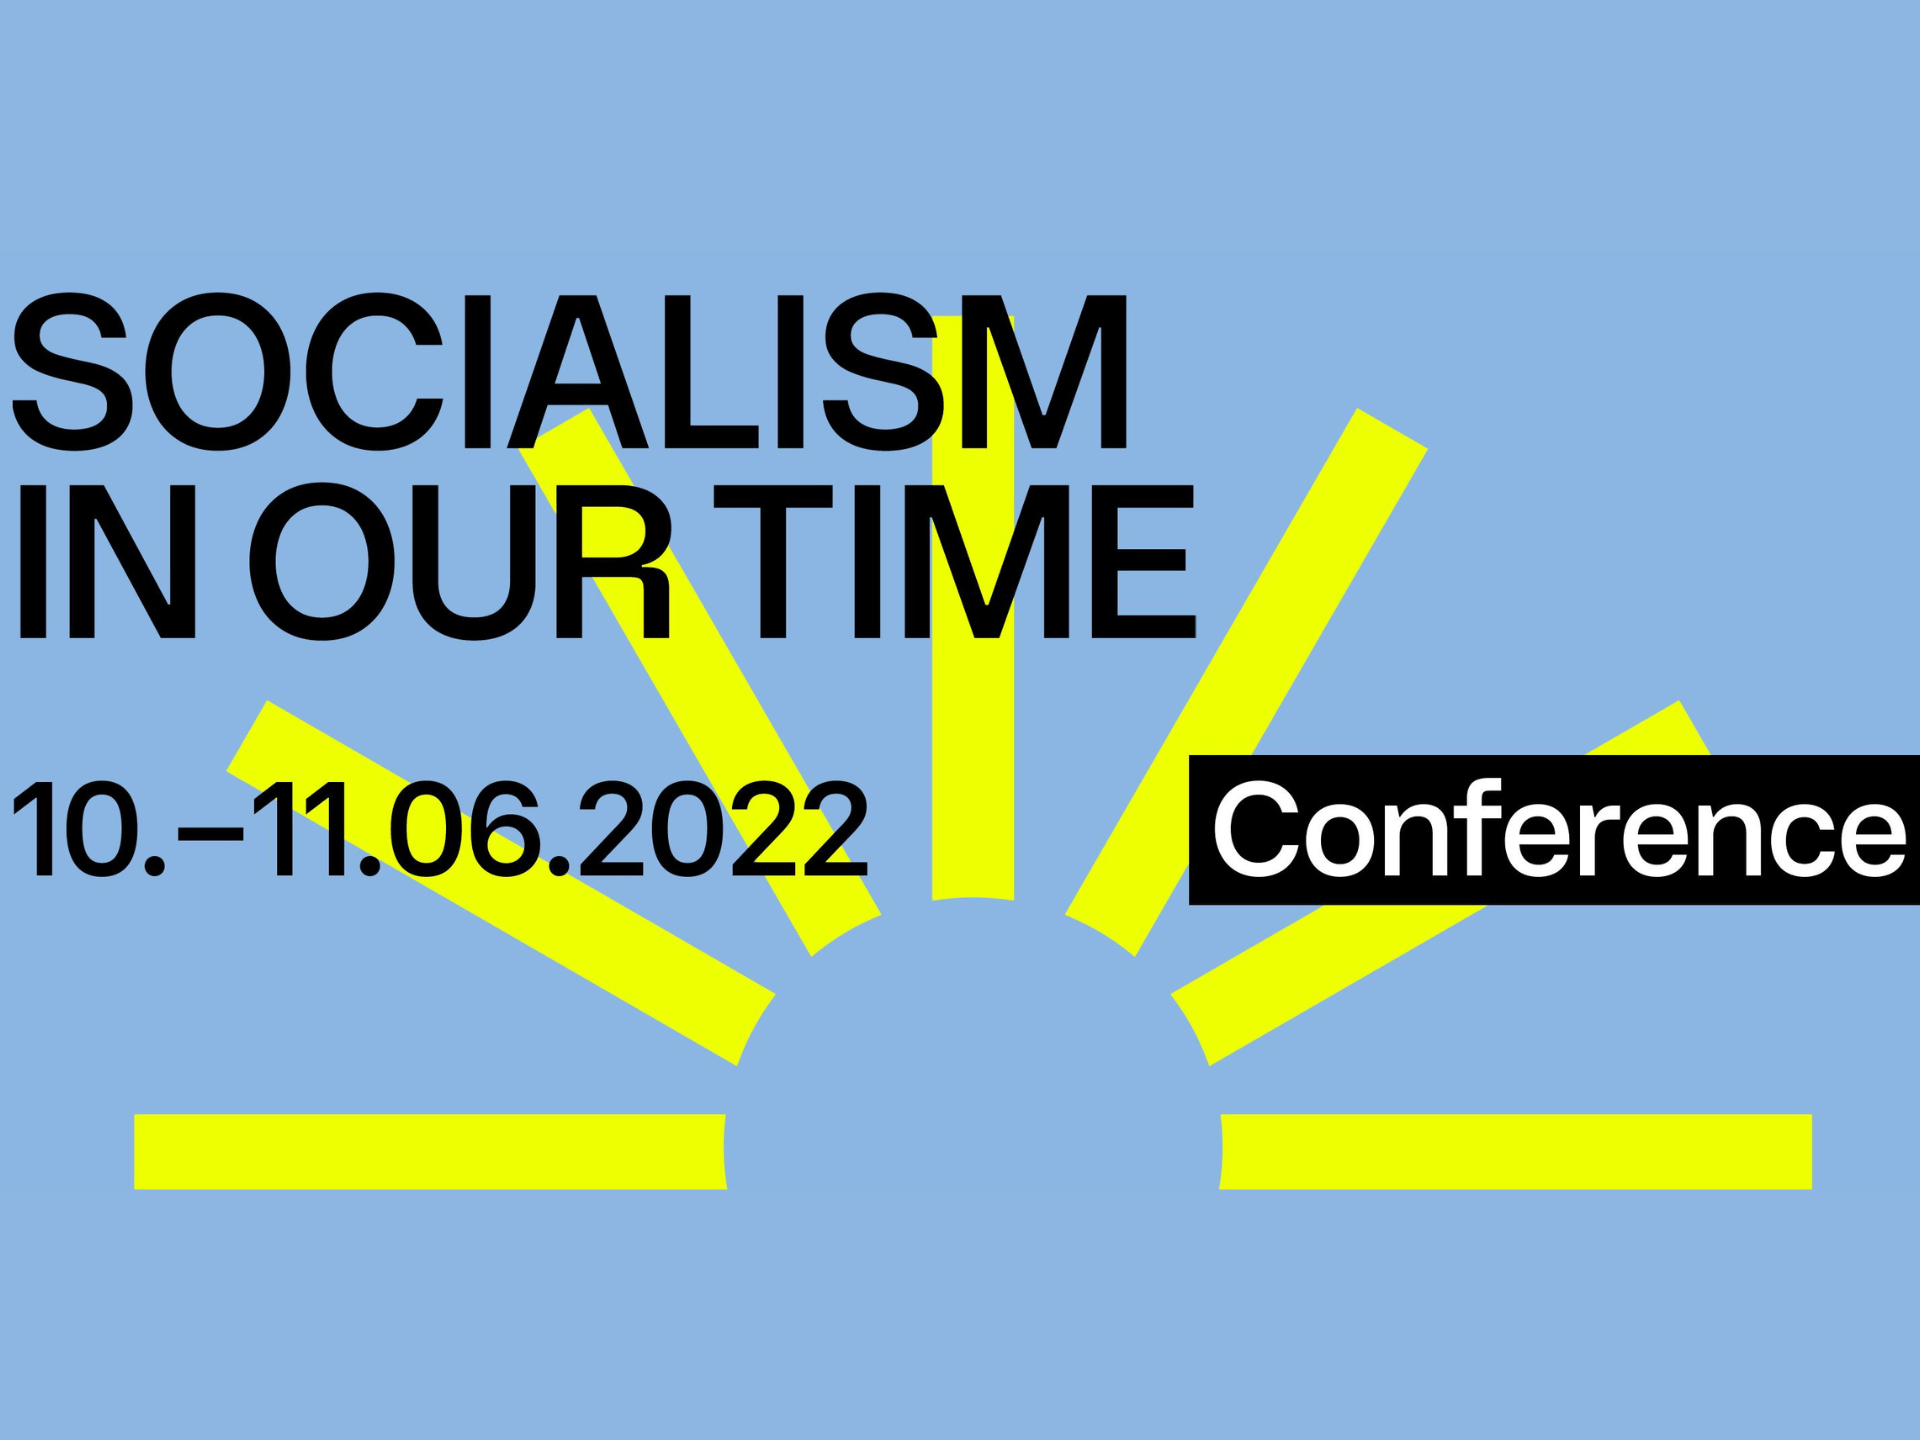 Le socialisme à notre époque - Conférence jacobine